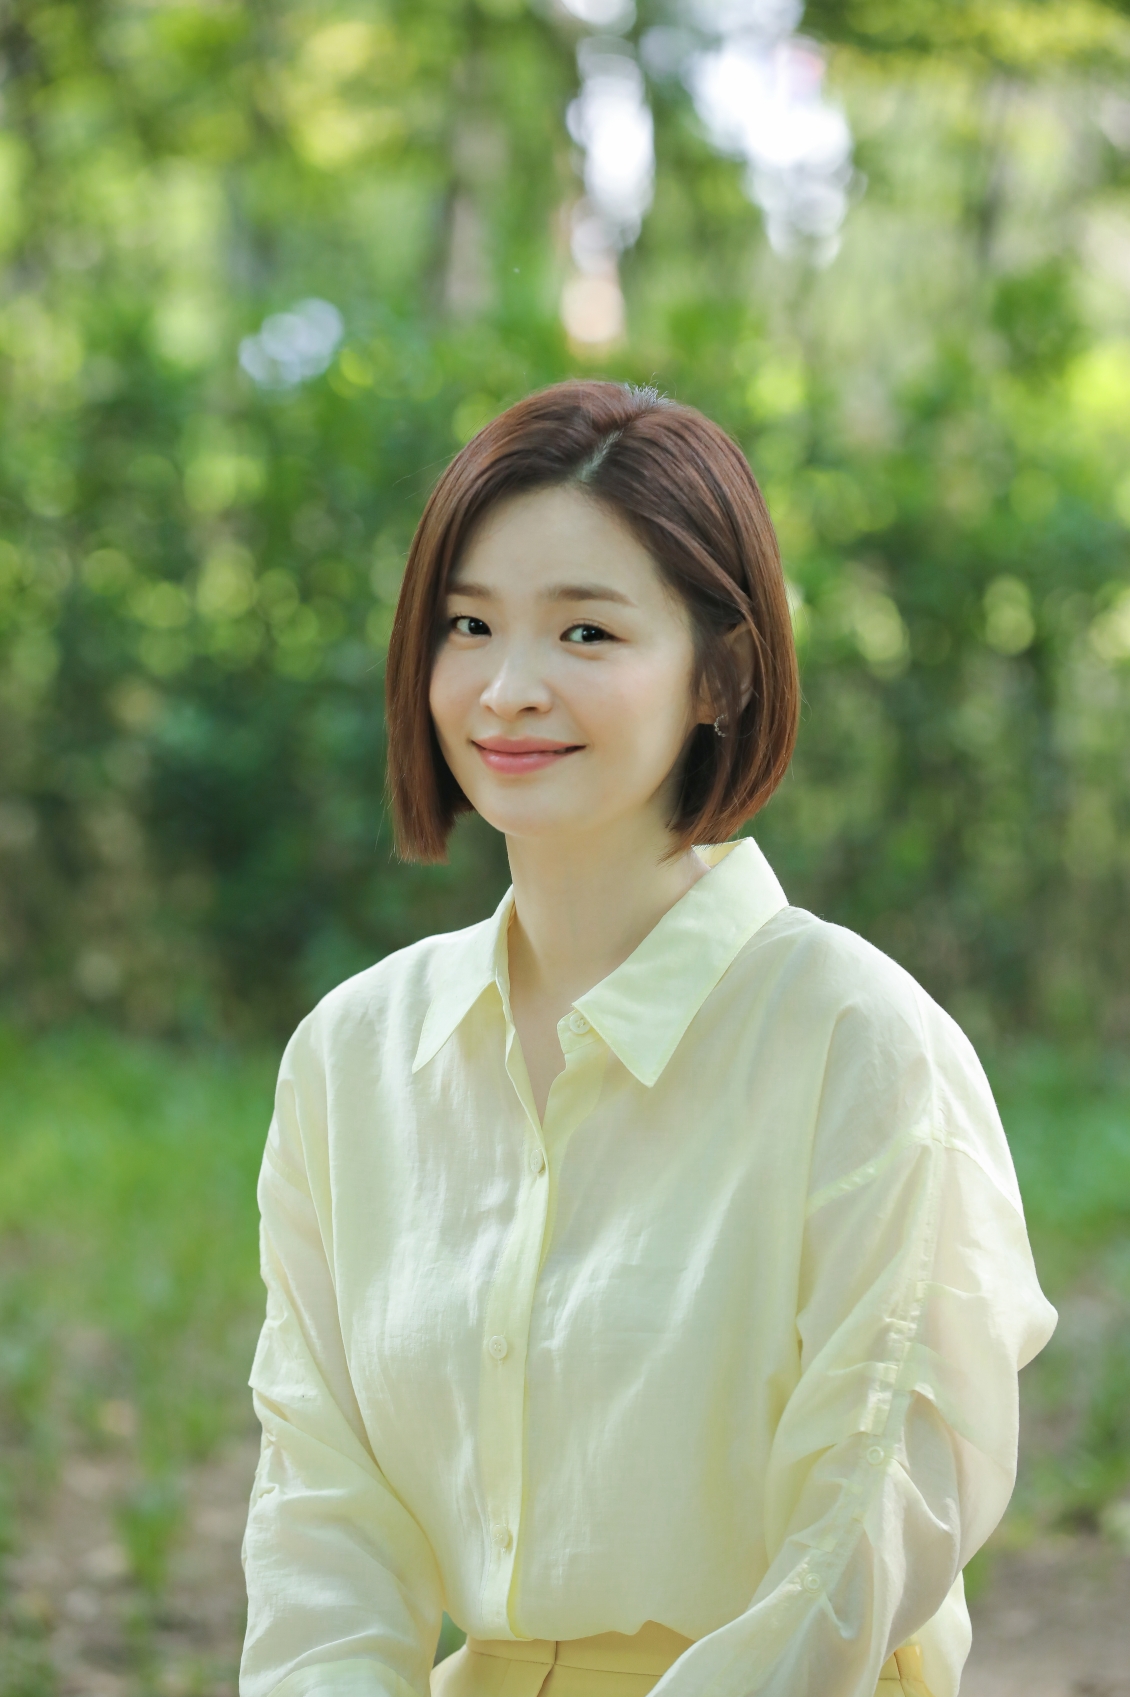  배우 전미도가 '슬기로운 의사생활' 종영 인터뷰를 진행했다. [사진=비스터스엔터테인먼트]